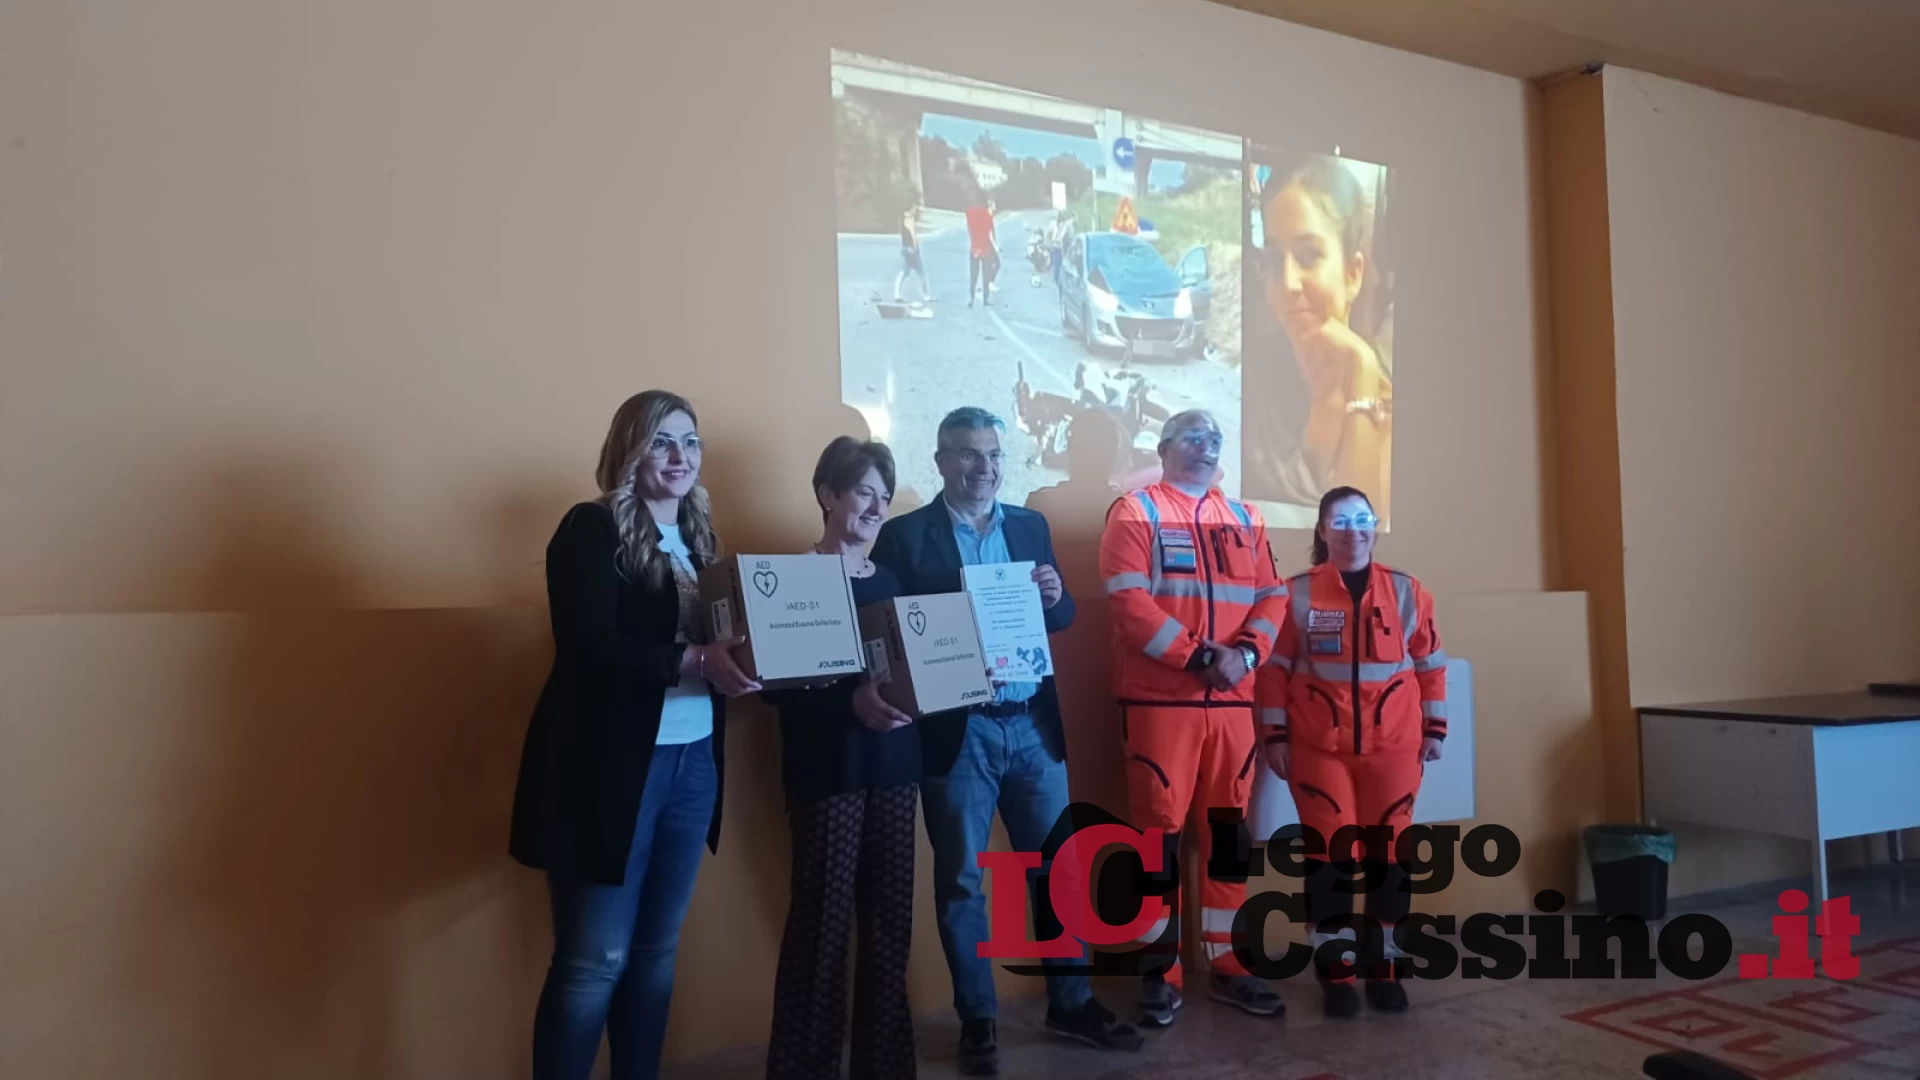 Sessanta genitori "regalano" due defibrillatori alla città di Cassino